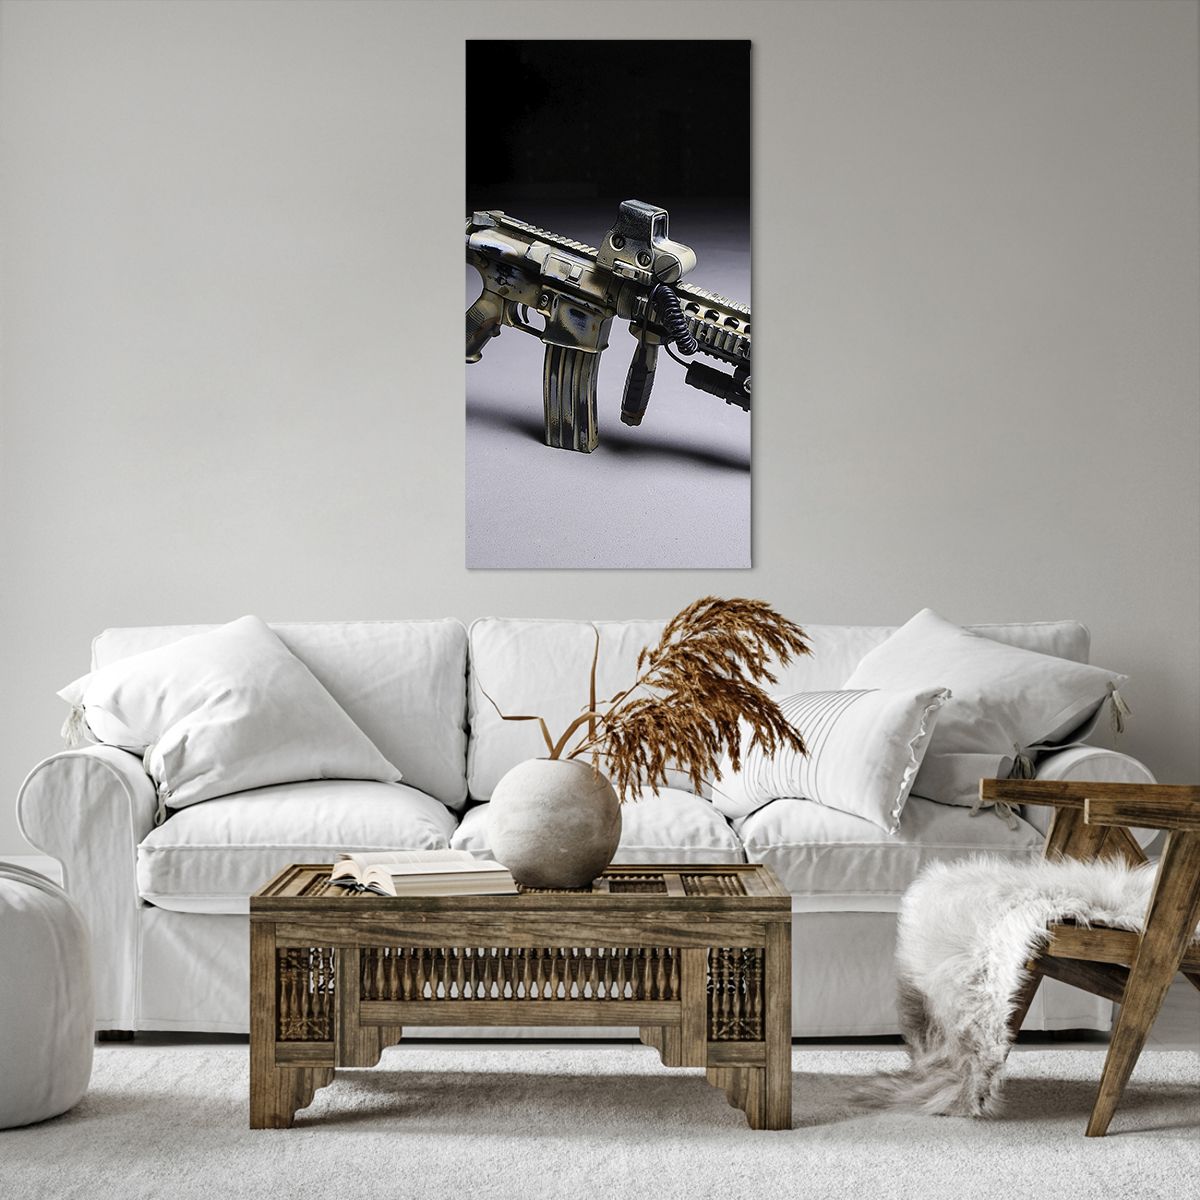 Bild auf Leinwand Militär, Bild auf Leinwand Gewehr, Bild auf Leinwand Waffe, Bild auf Leinwand Heer, Bild auf Leinwand Heer